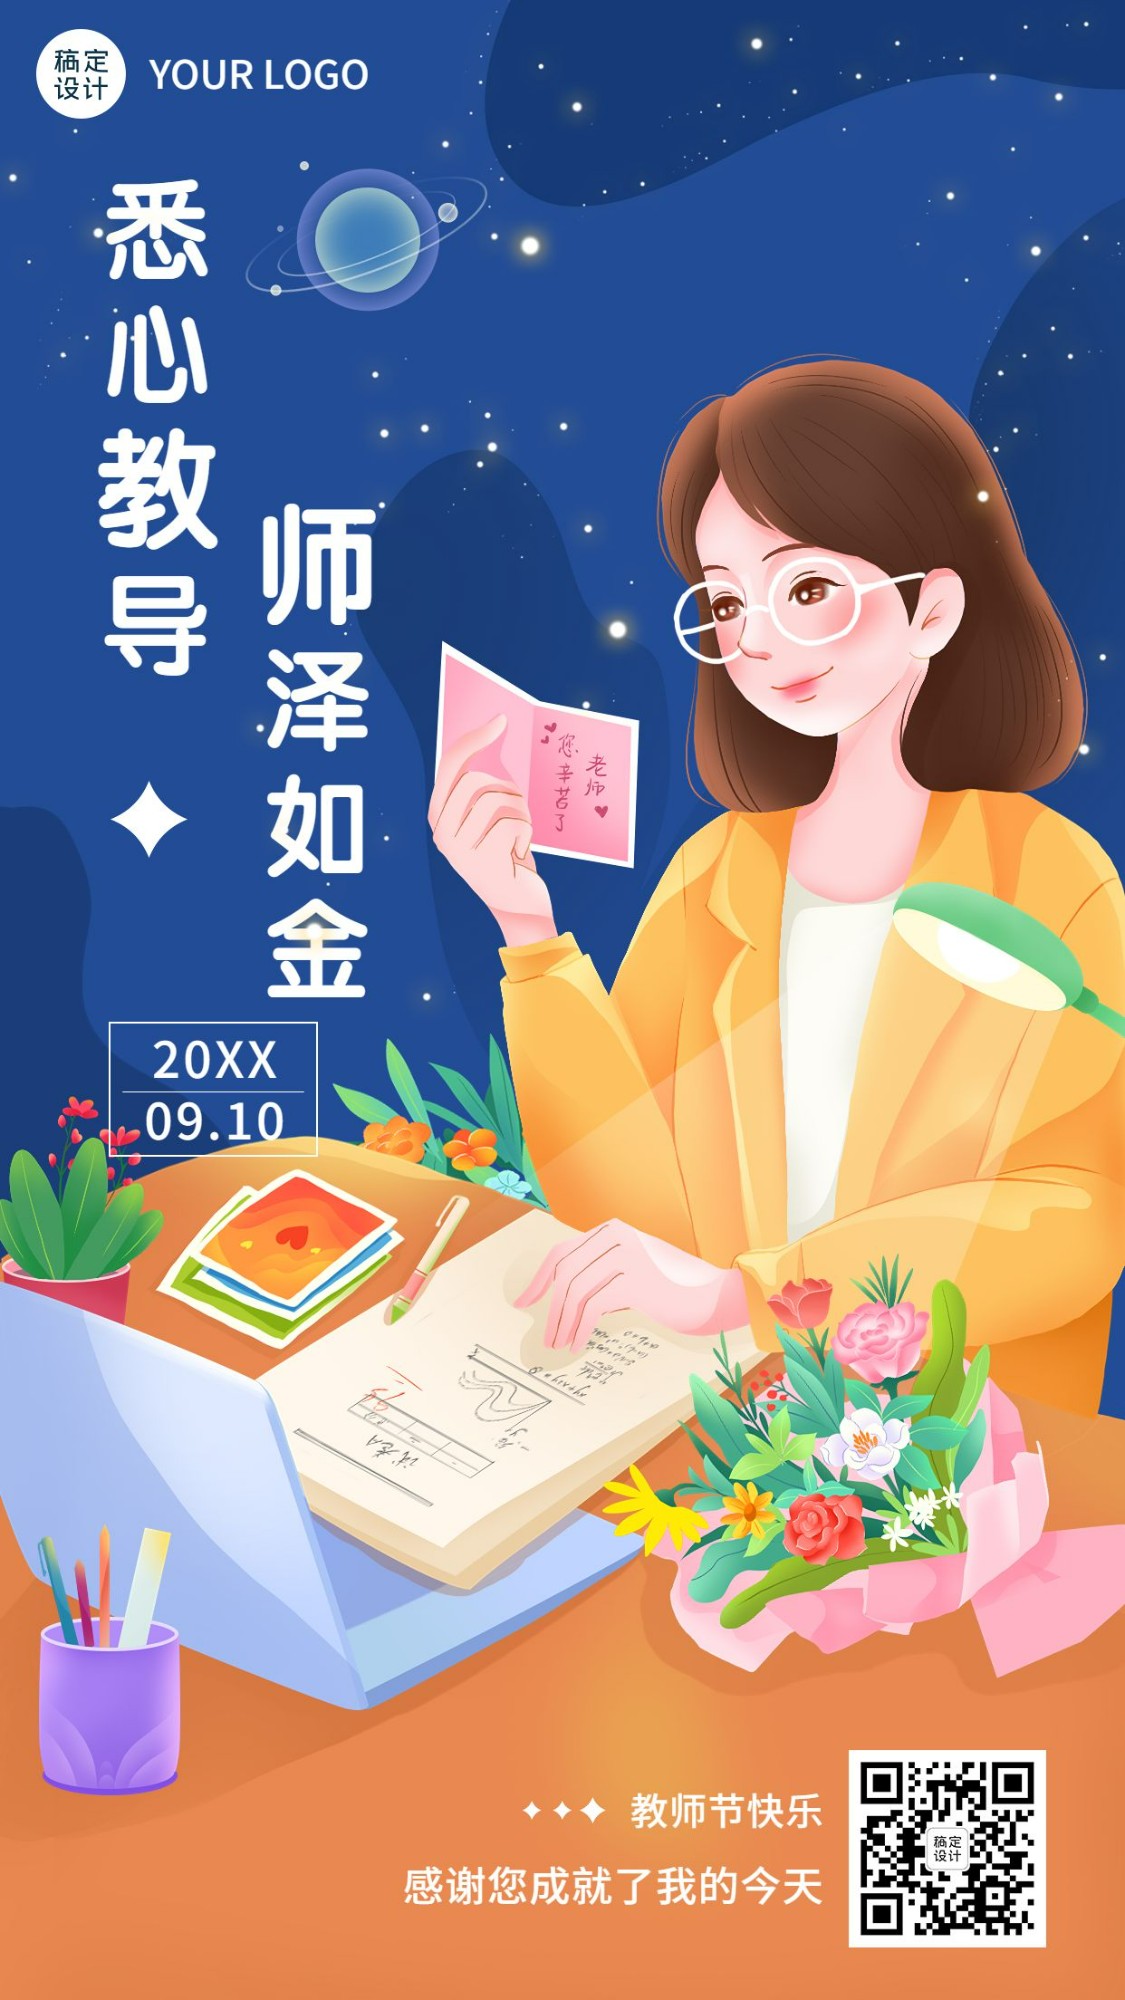 教师节节日祝福插画手机海报